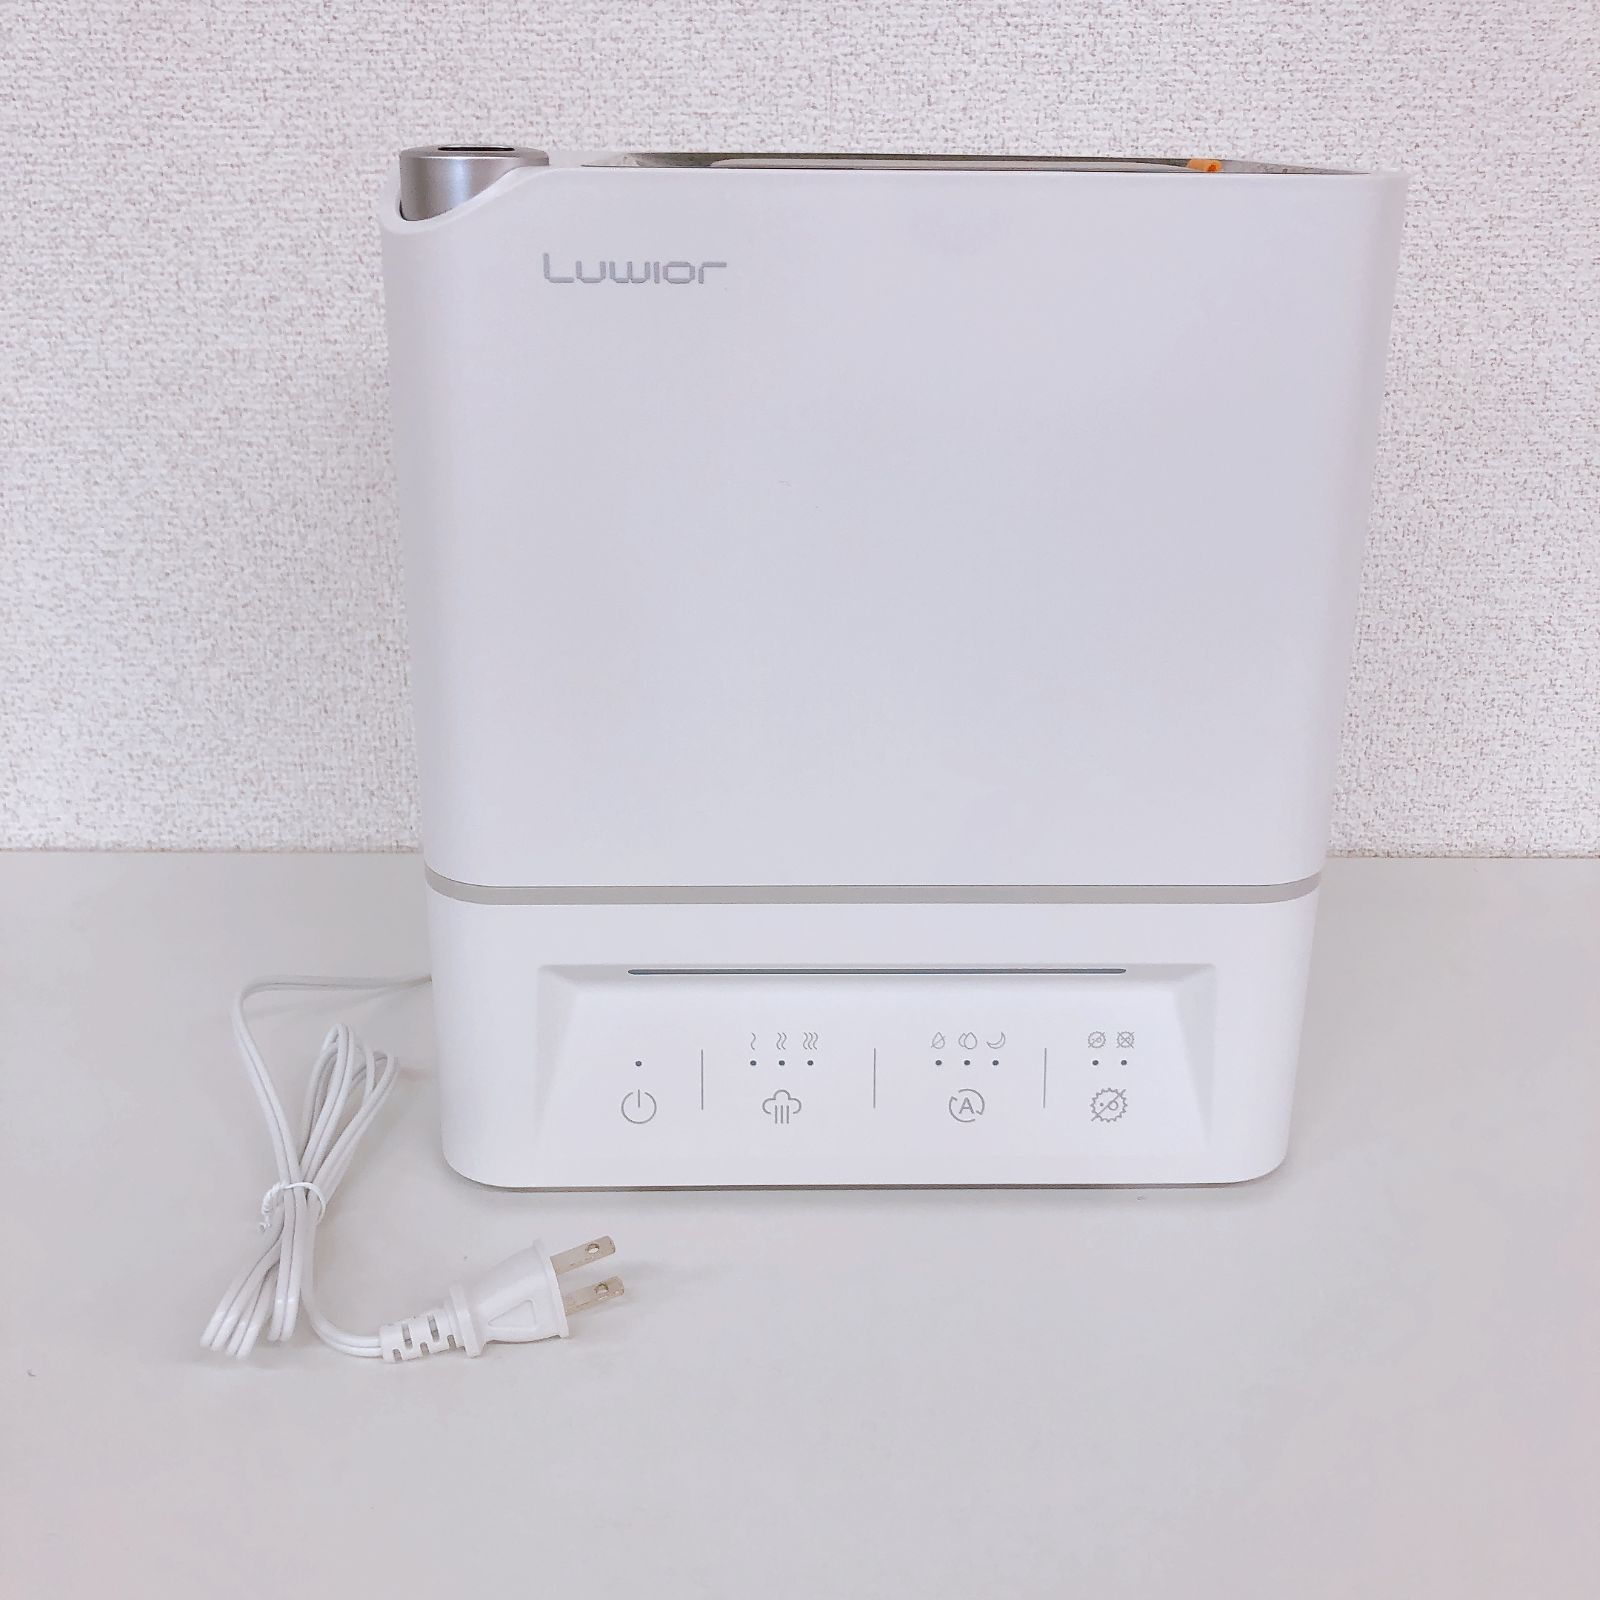 加湿器 卓上 除菌加湿器 Luwior 電解水除菌 超音波加湿器 大容量 4L